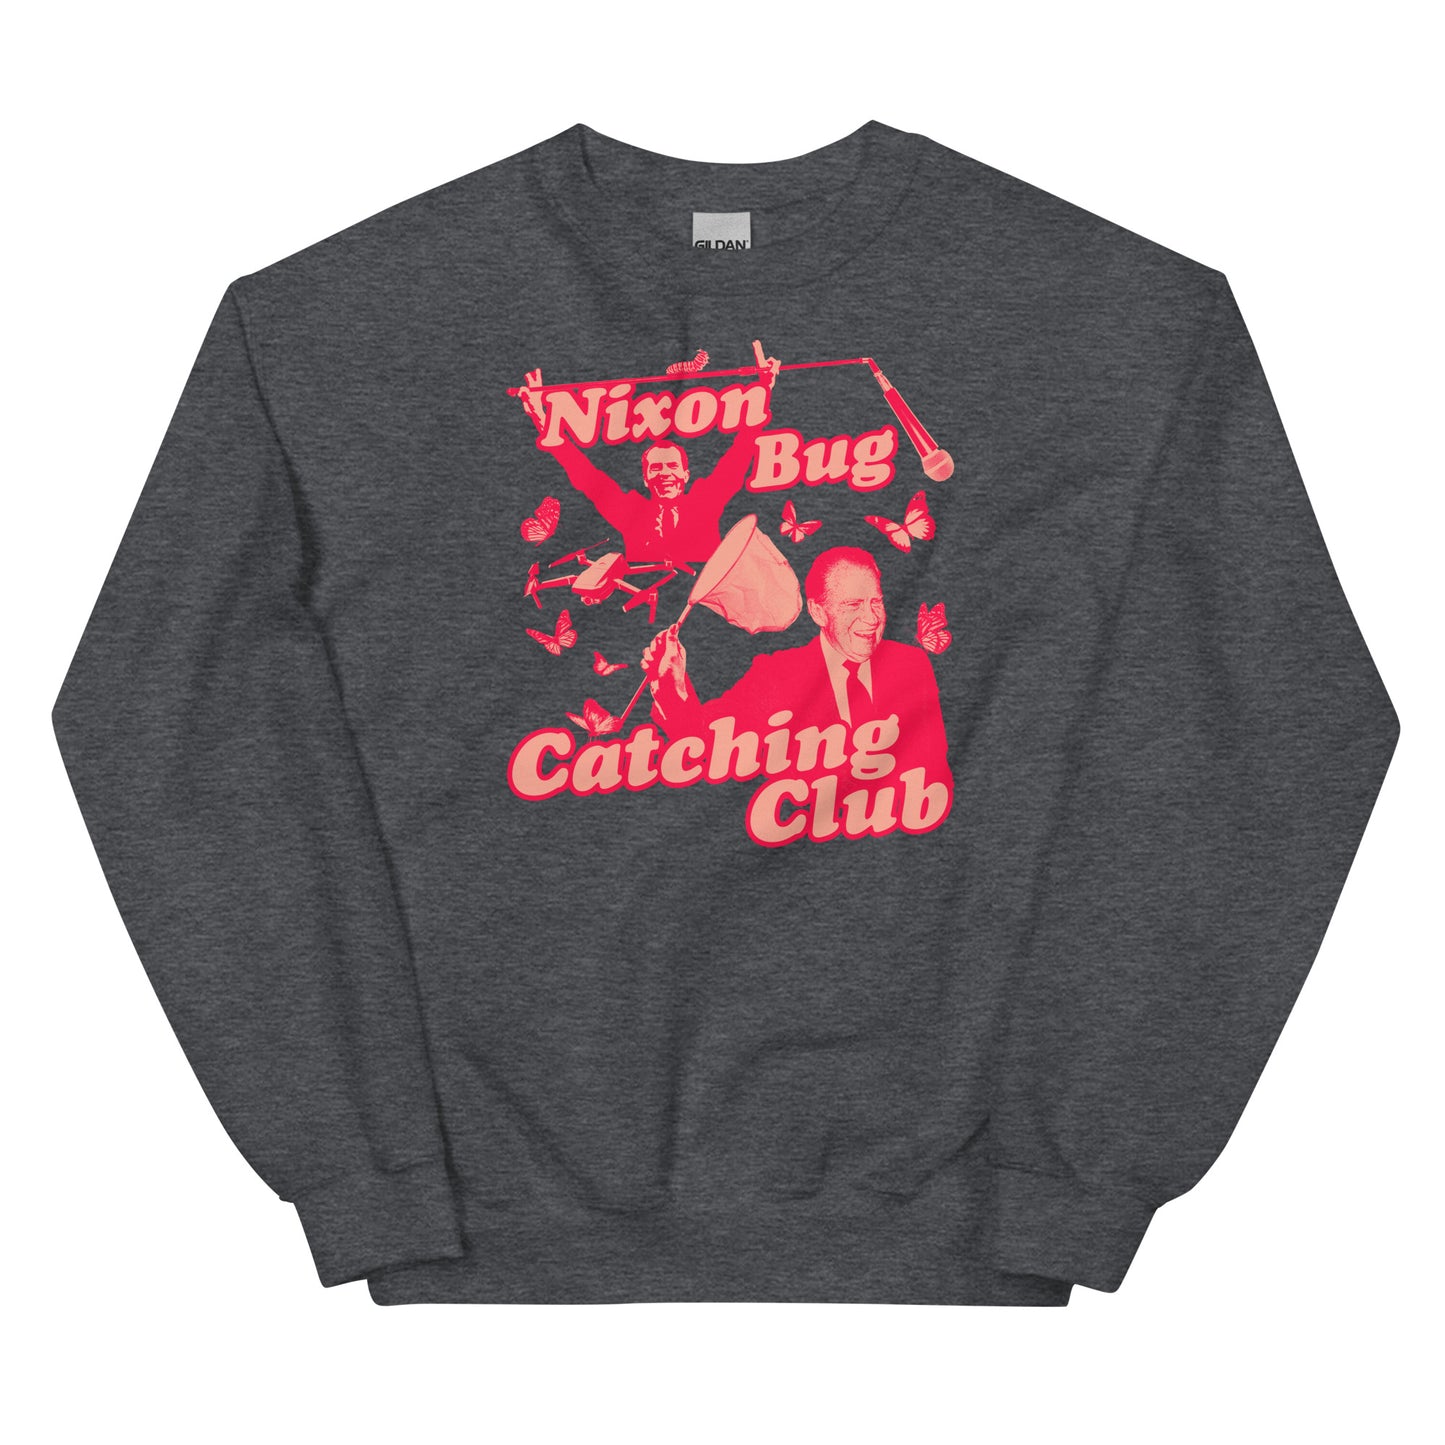 Nixon Bug Catching Club Unisex Sweatshirt